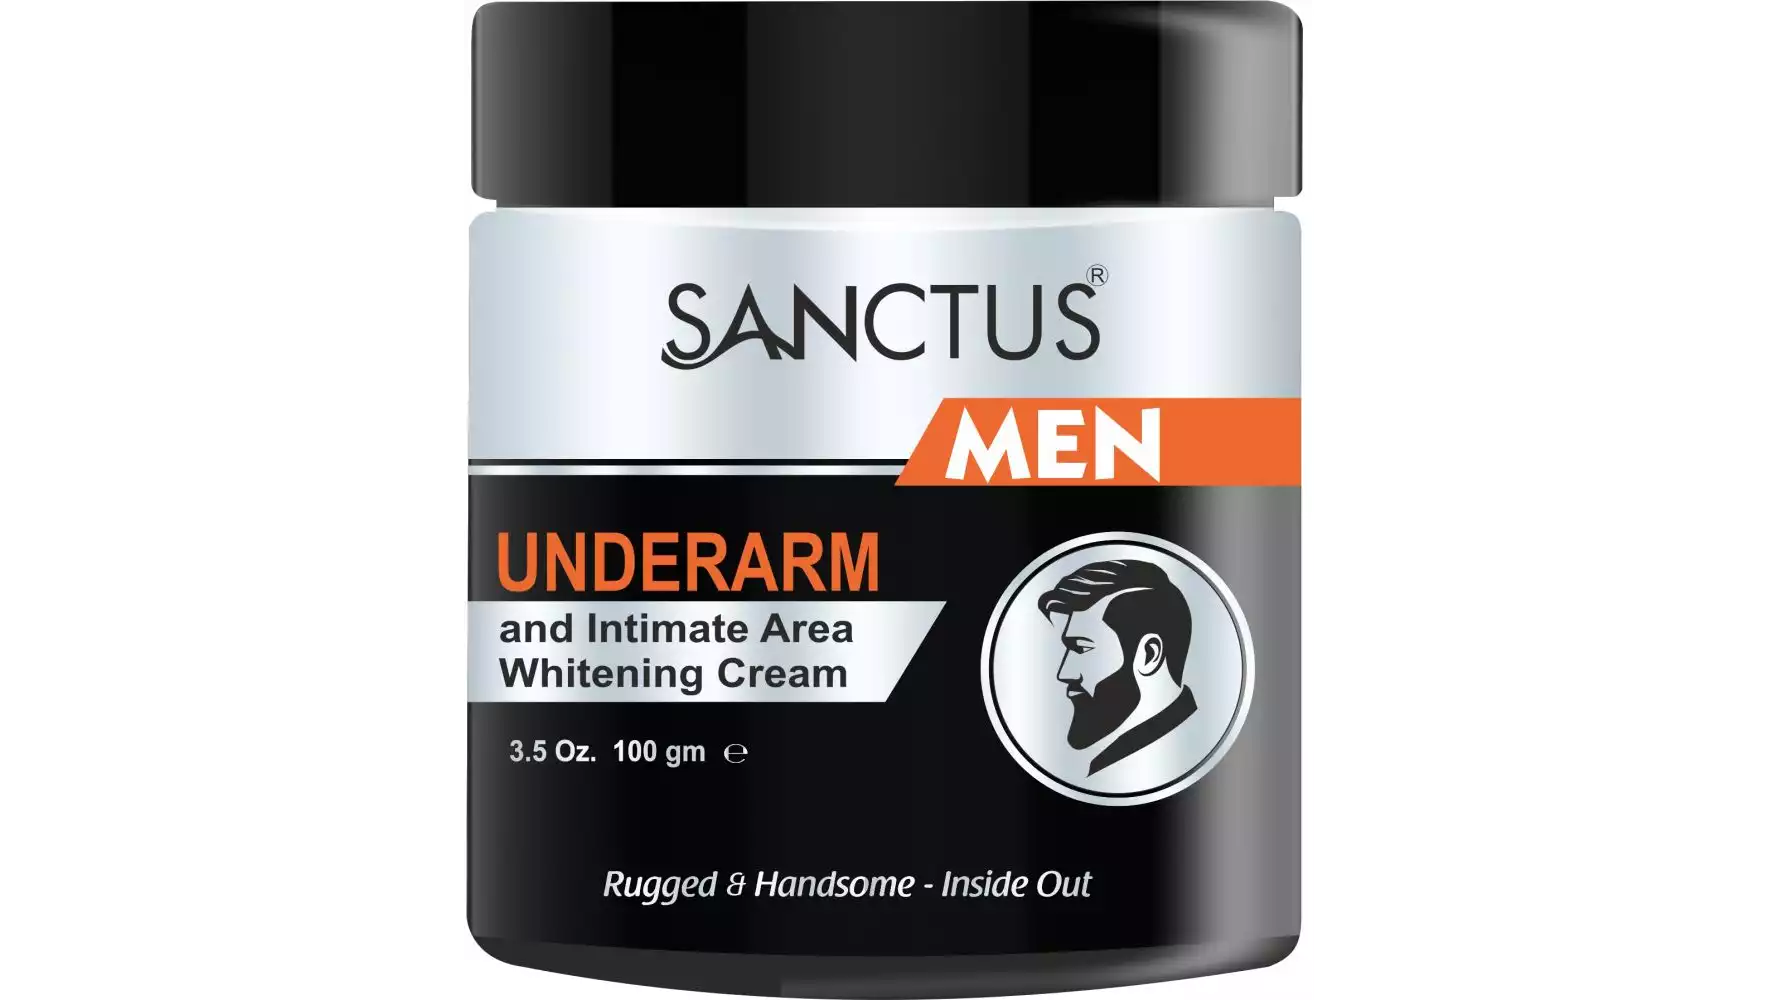 Sanctus Underarm And Intimate Area Whitening Cream For Men (100g)